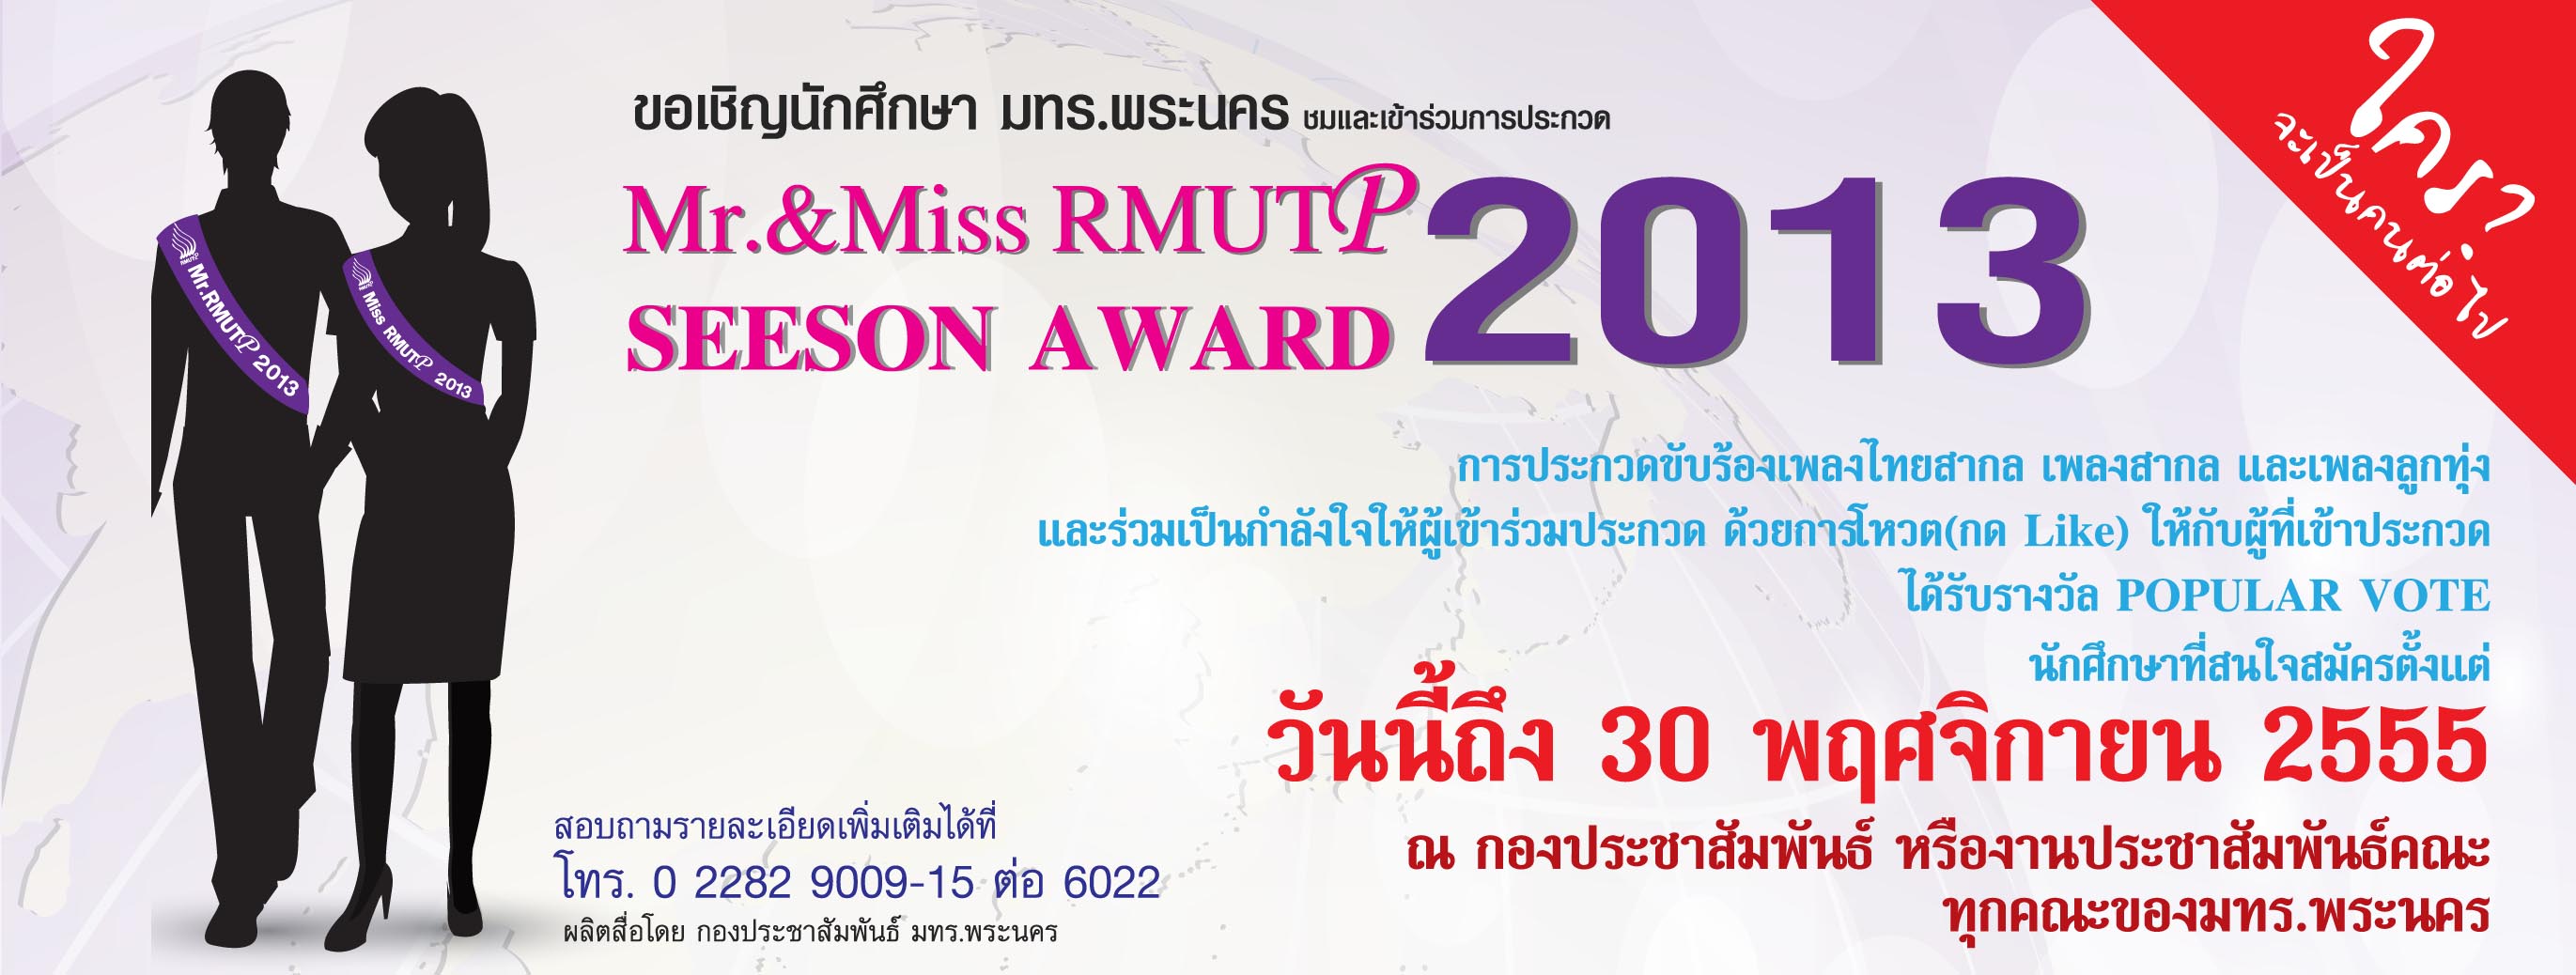 ขอเชิญนักศึกษา  มทร.พระนครทุกท่าน เข้าร่วมประกวด Mr. & Miss RMUTP 2013